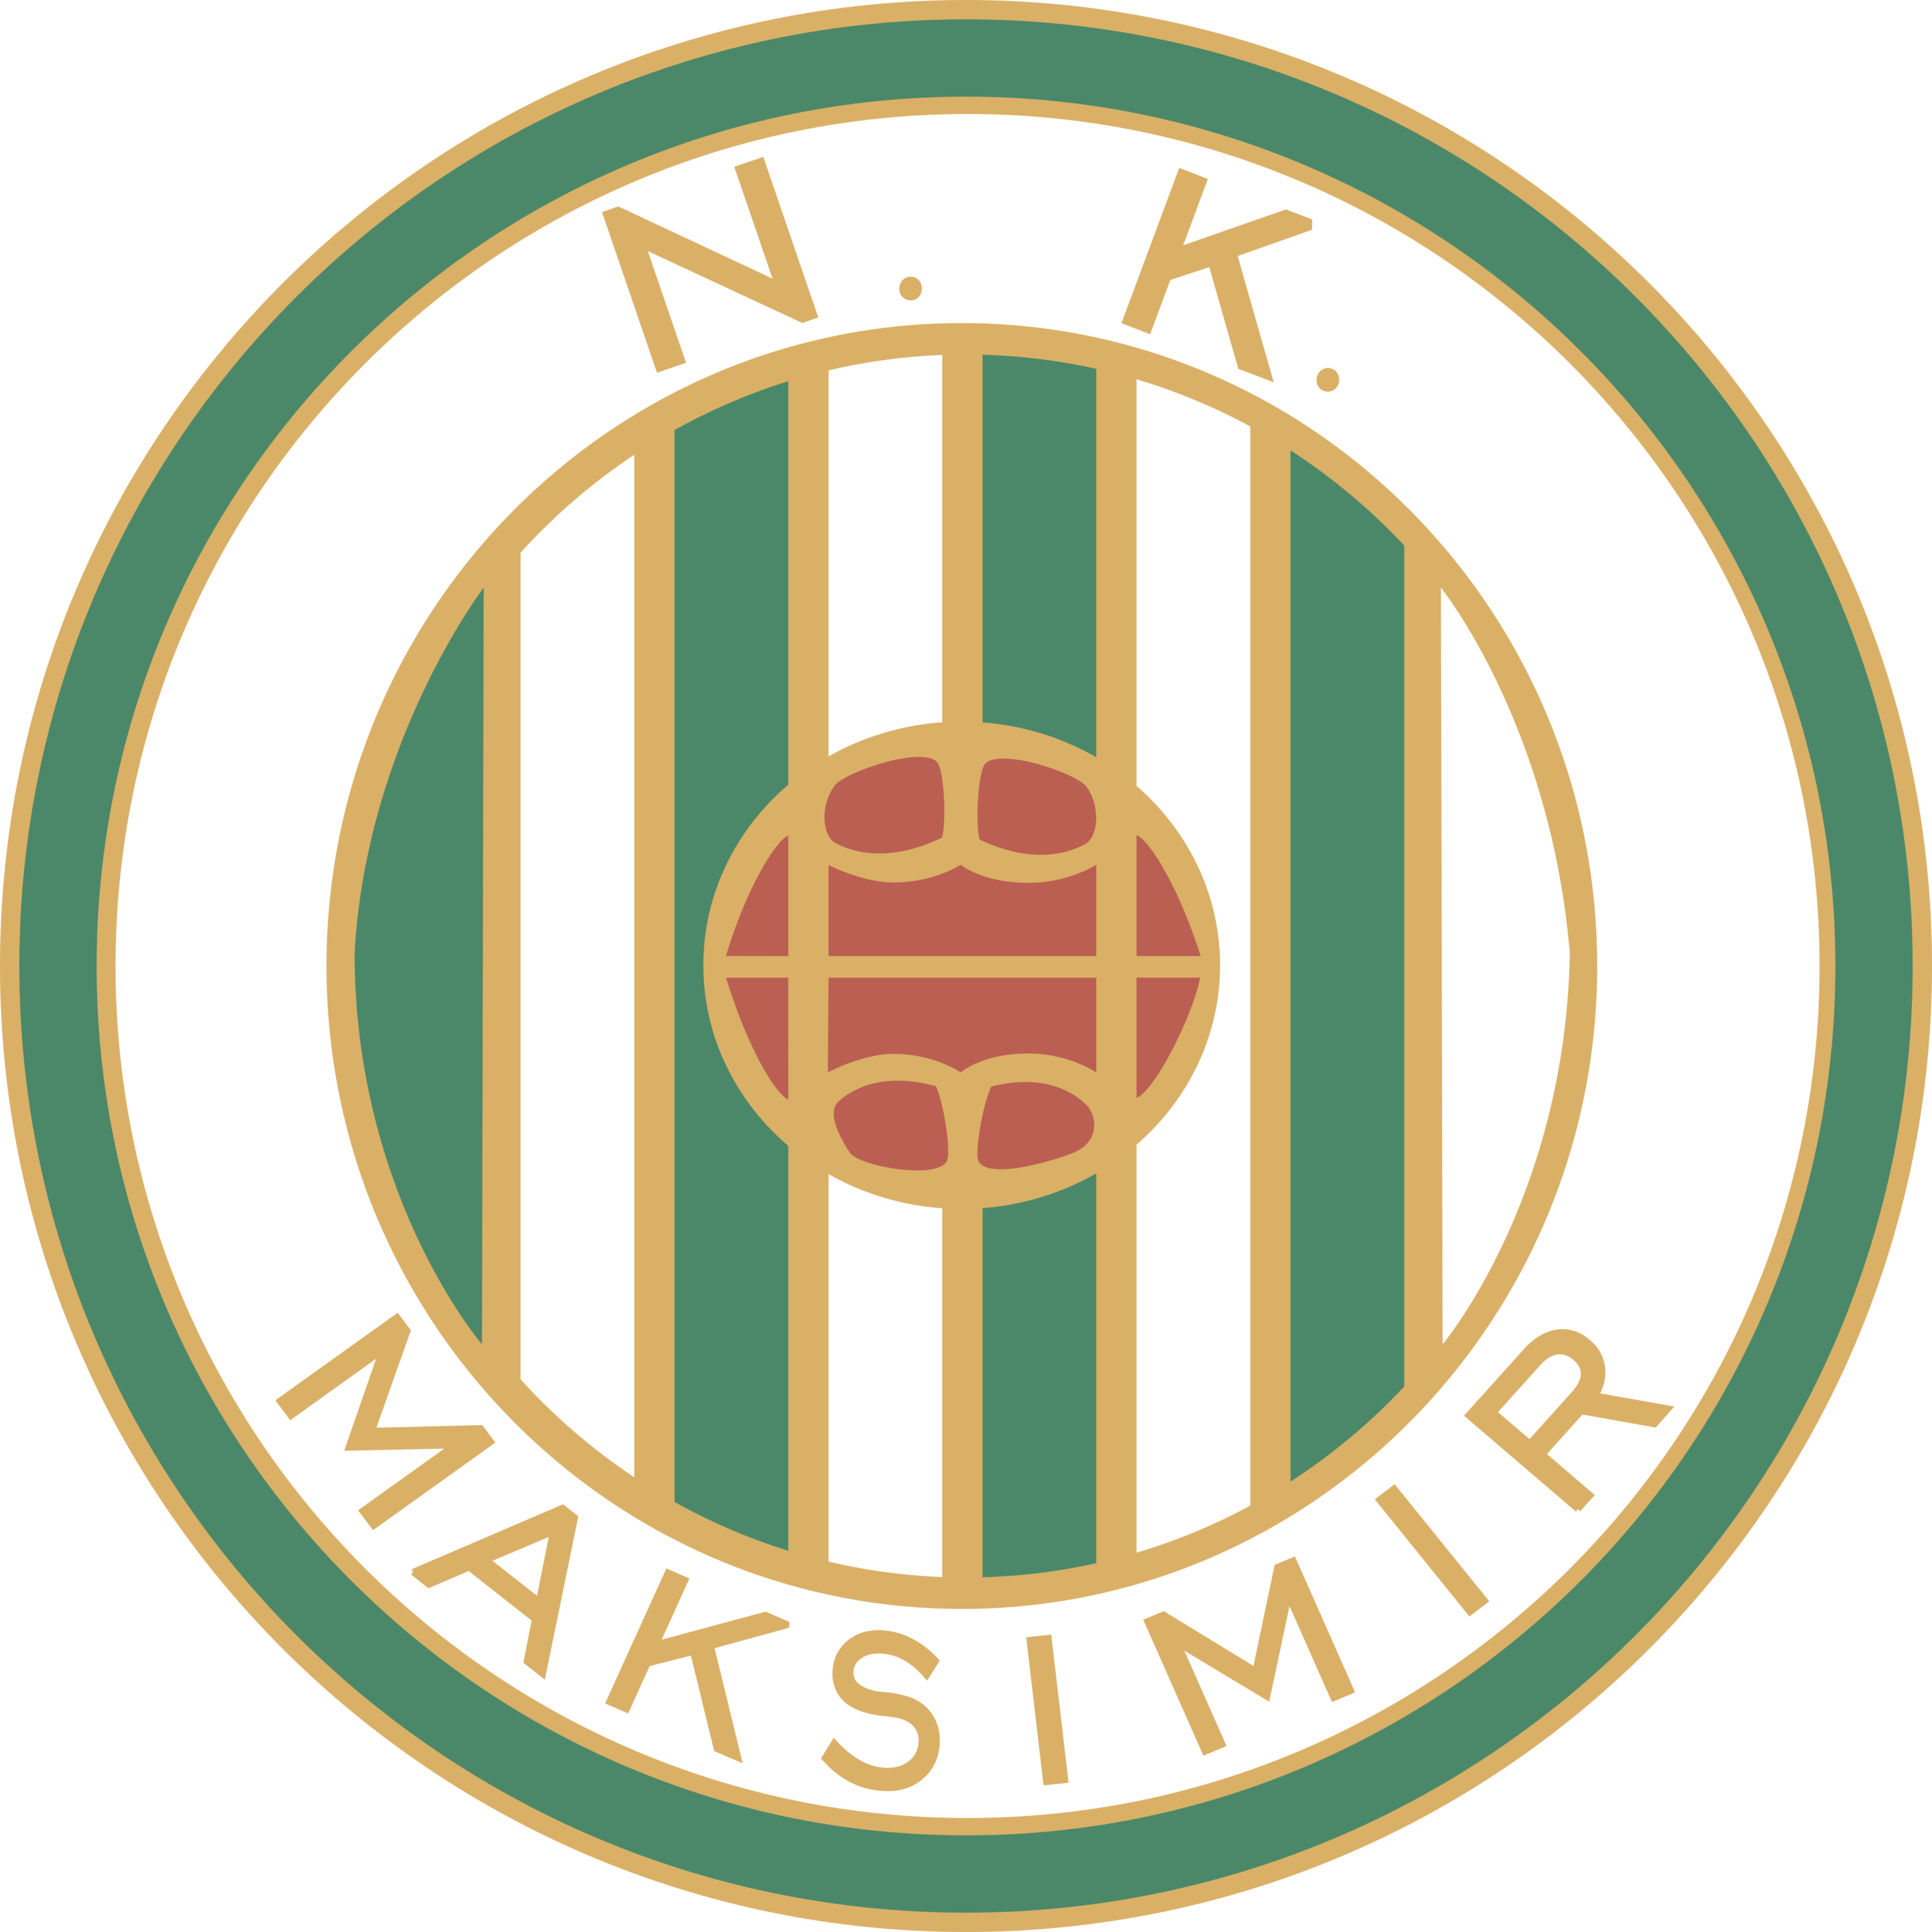 NK Maksimir Zagreb Logo